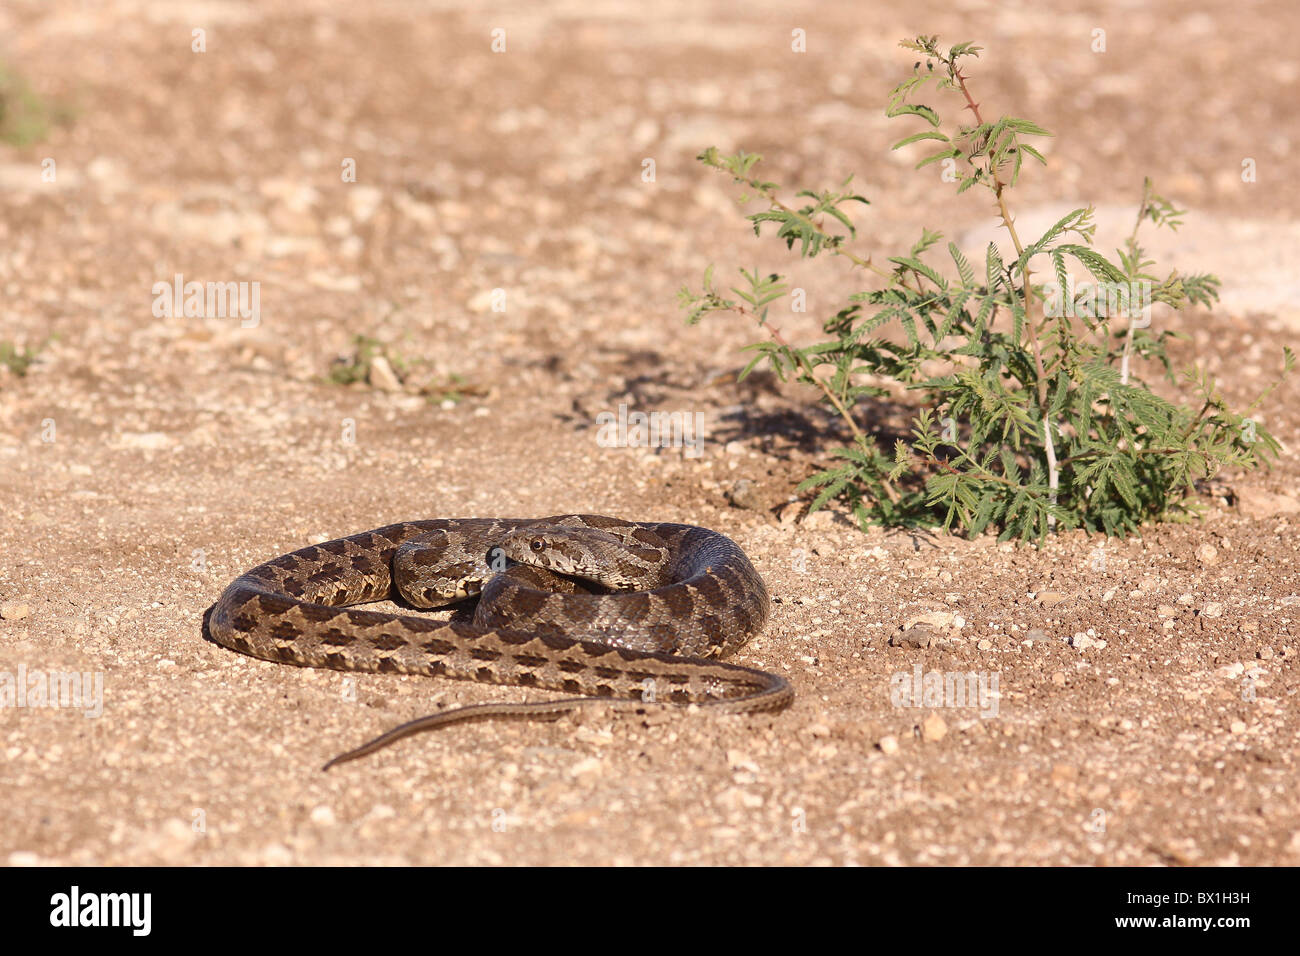 Coin-marked Snake (Hemorrhois nummifer syn Coluber nummifer) AKA Asian Racer or Coin snake. Photographed in Israel In November Stock Photo